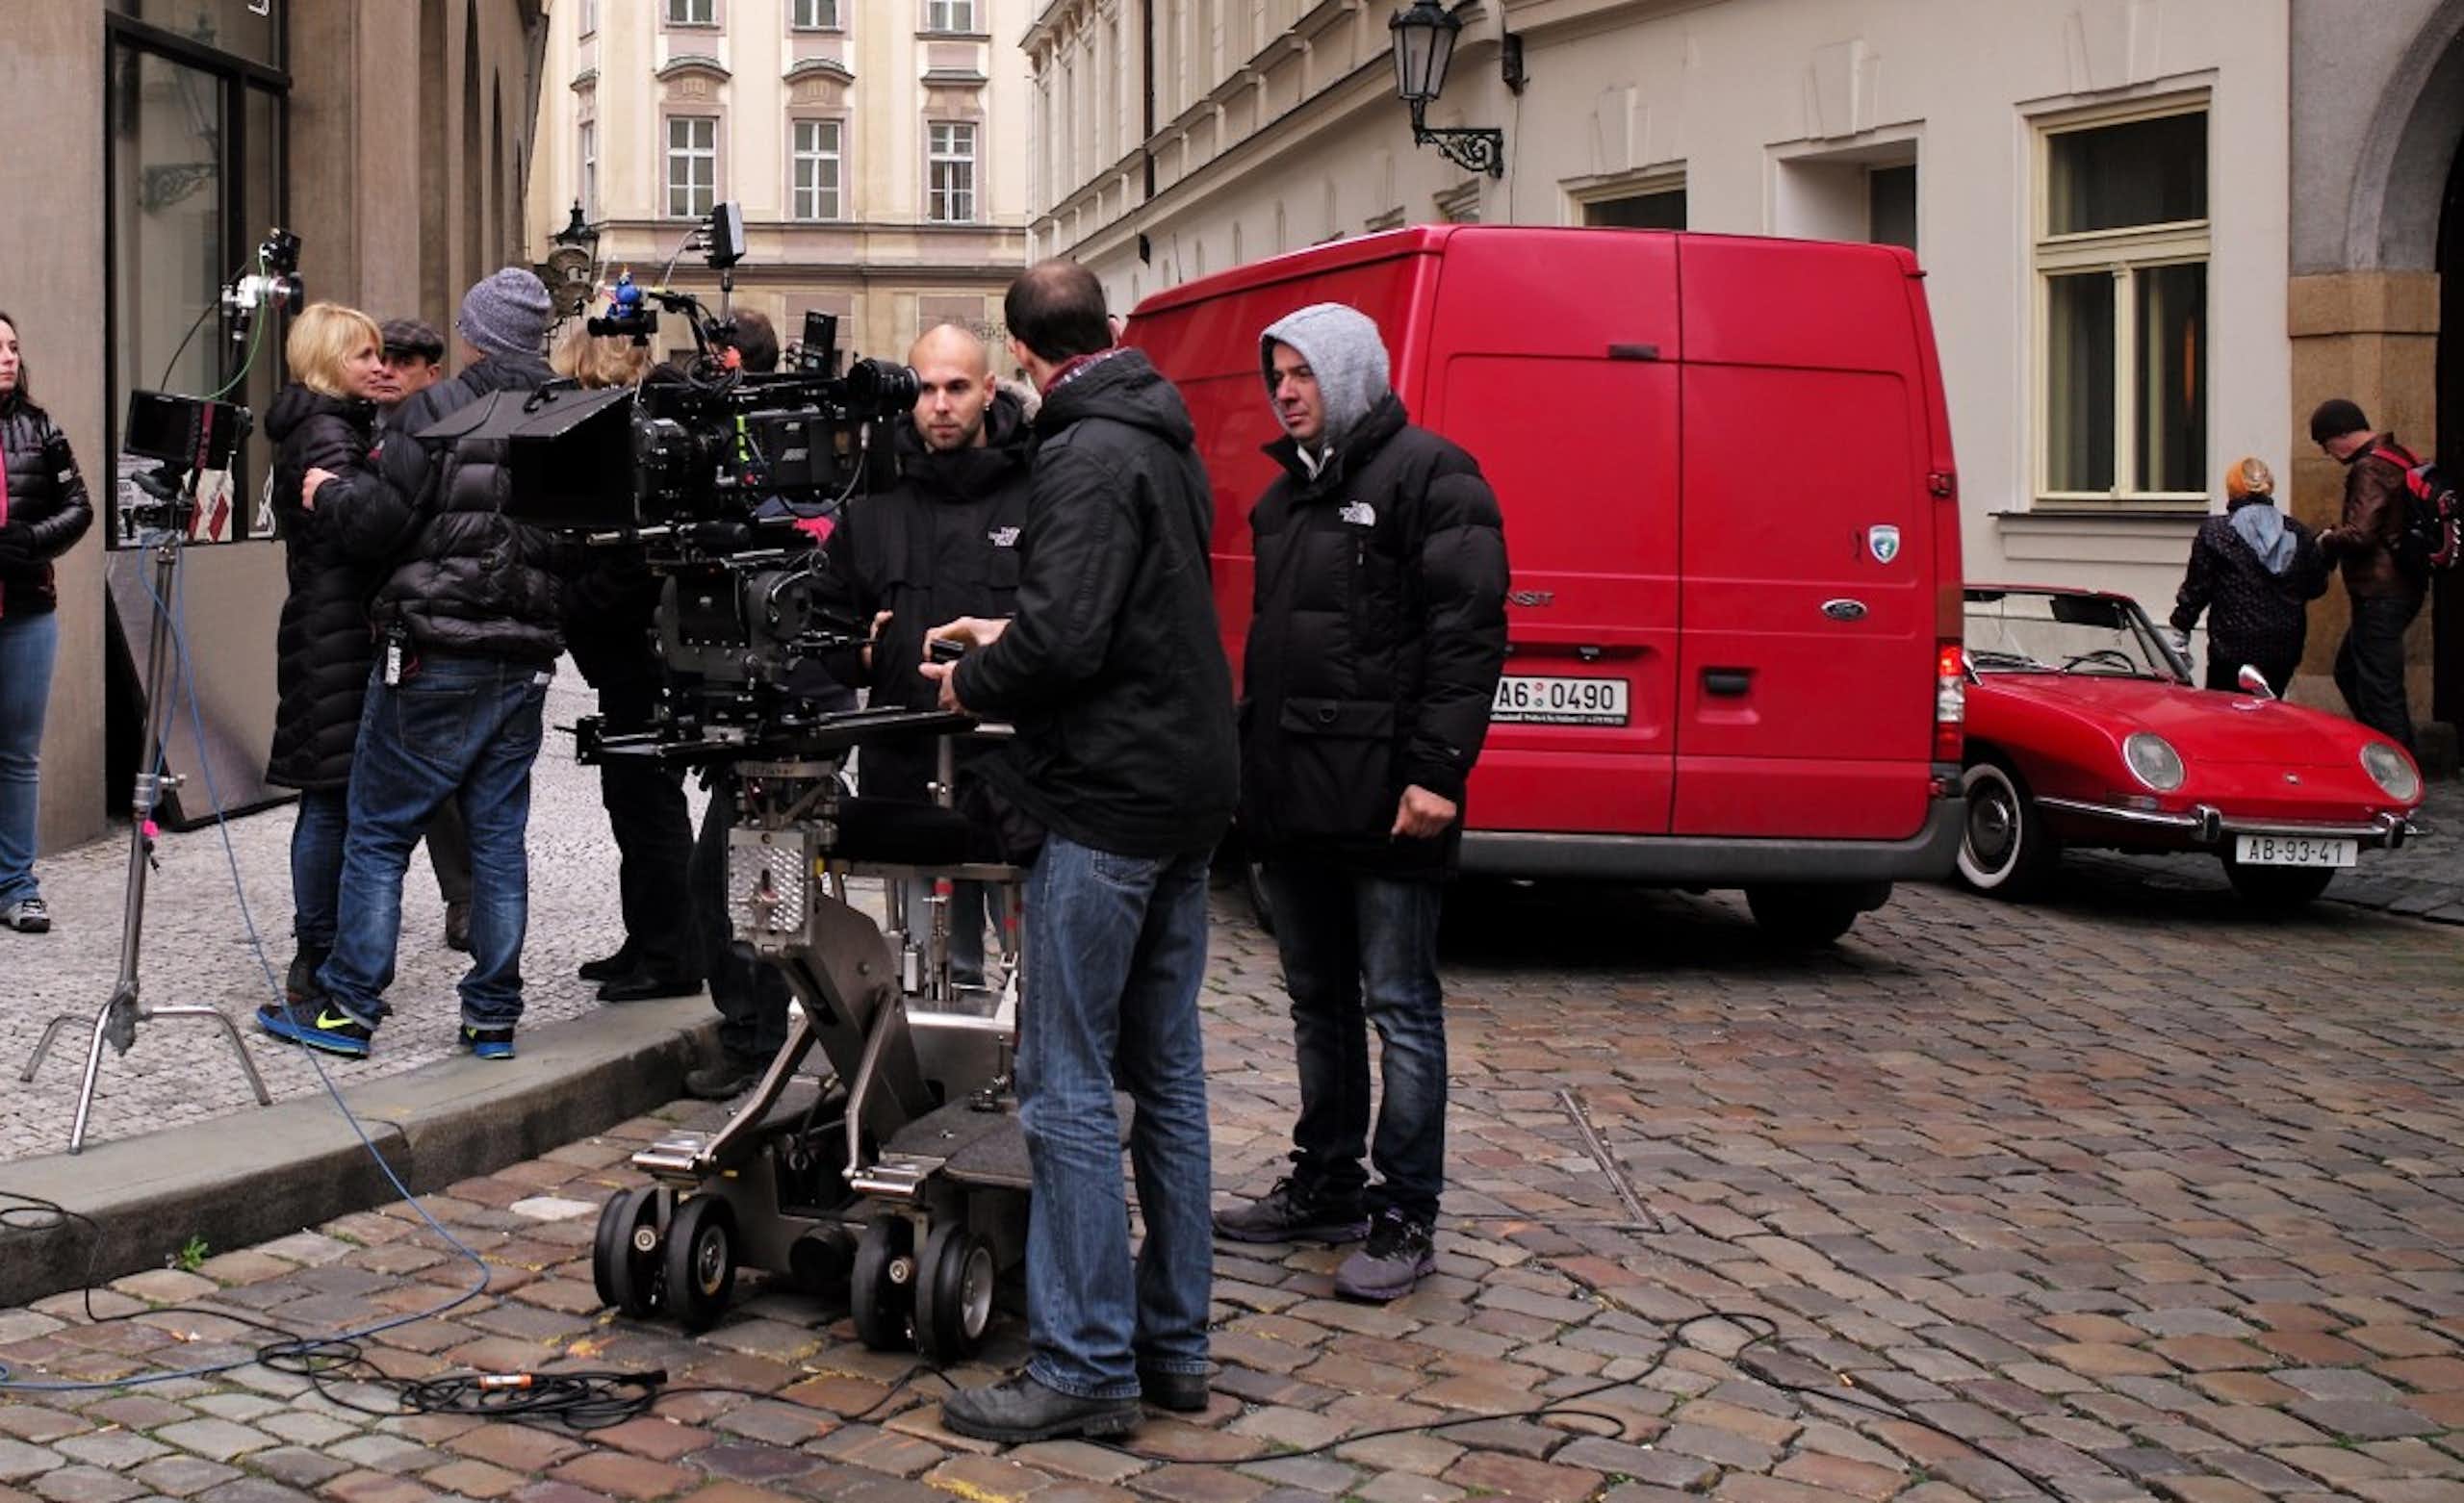 Tournage de film dans les rues de Prague 